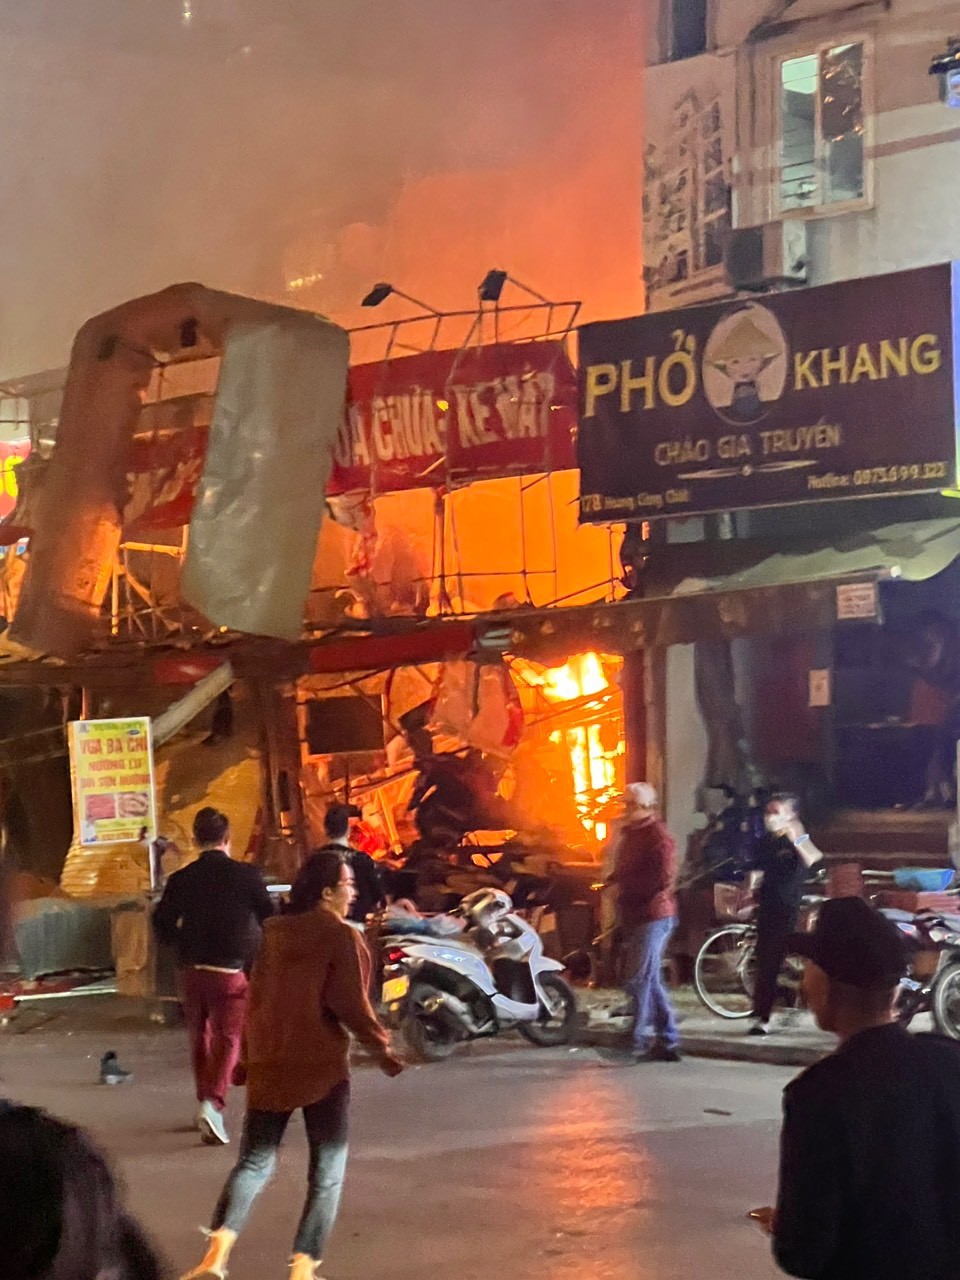 Phát hiện nhiều mảnh giấy hồng nghi xác pháo tại hiện trường vụ cháy lớn ở Hà Nội-7